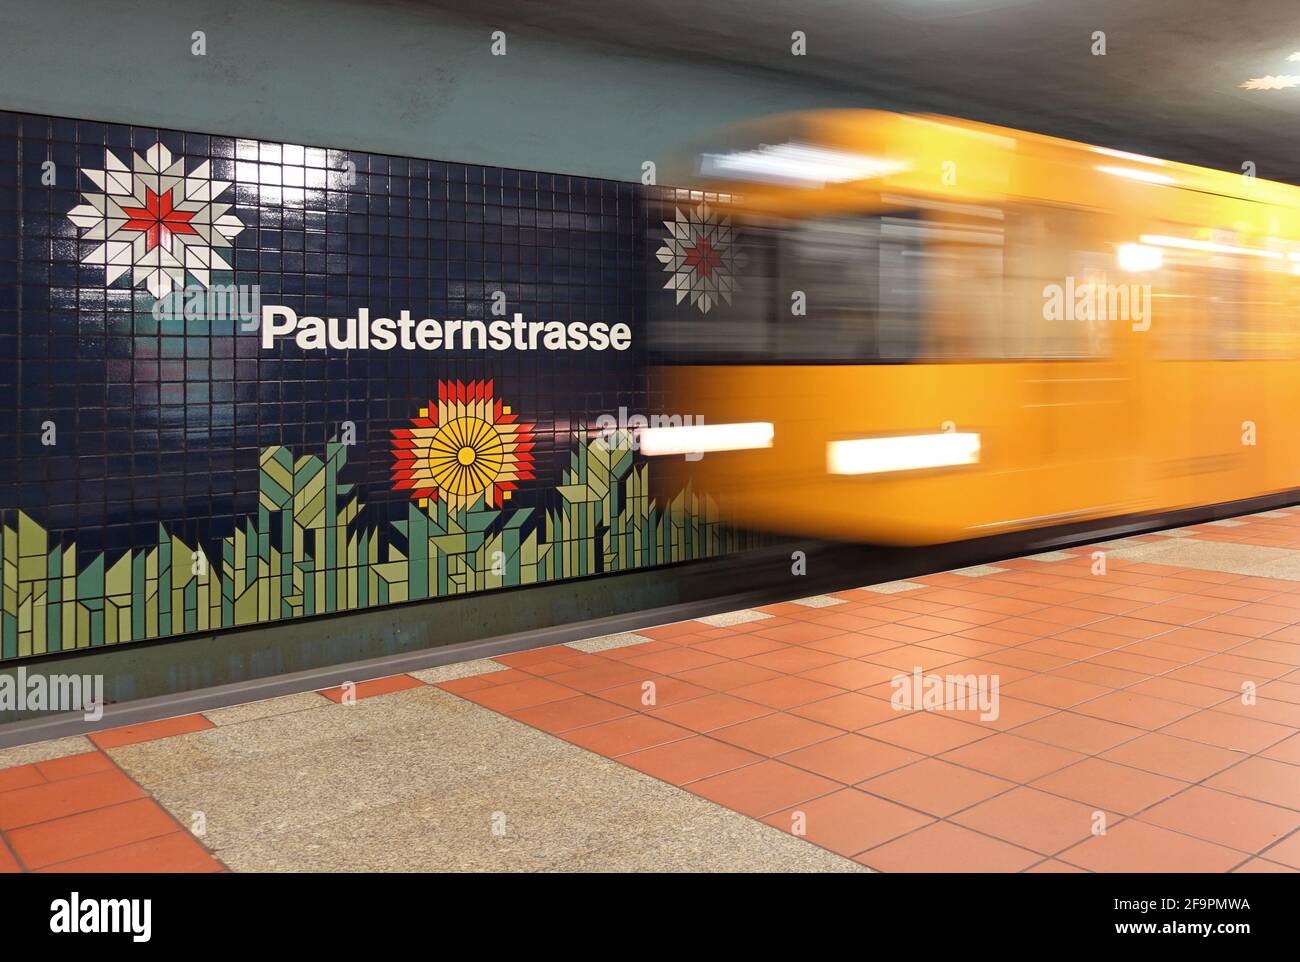 10.12.2018, Berlino, Berlino, Germania - la linea 7 della metropolitana arriva alla stazione di Paulsternstrasse. 00S181210D625CAROEX.JPG [VERSIONE DEL MODELLO: NO, VERSIONE DELLA PROPRIETÀ: Foto Stock